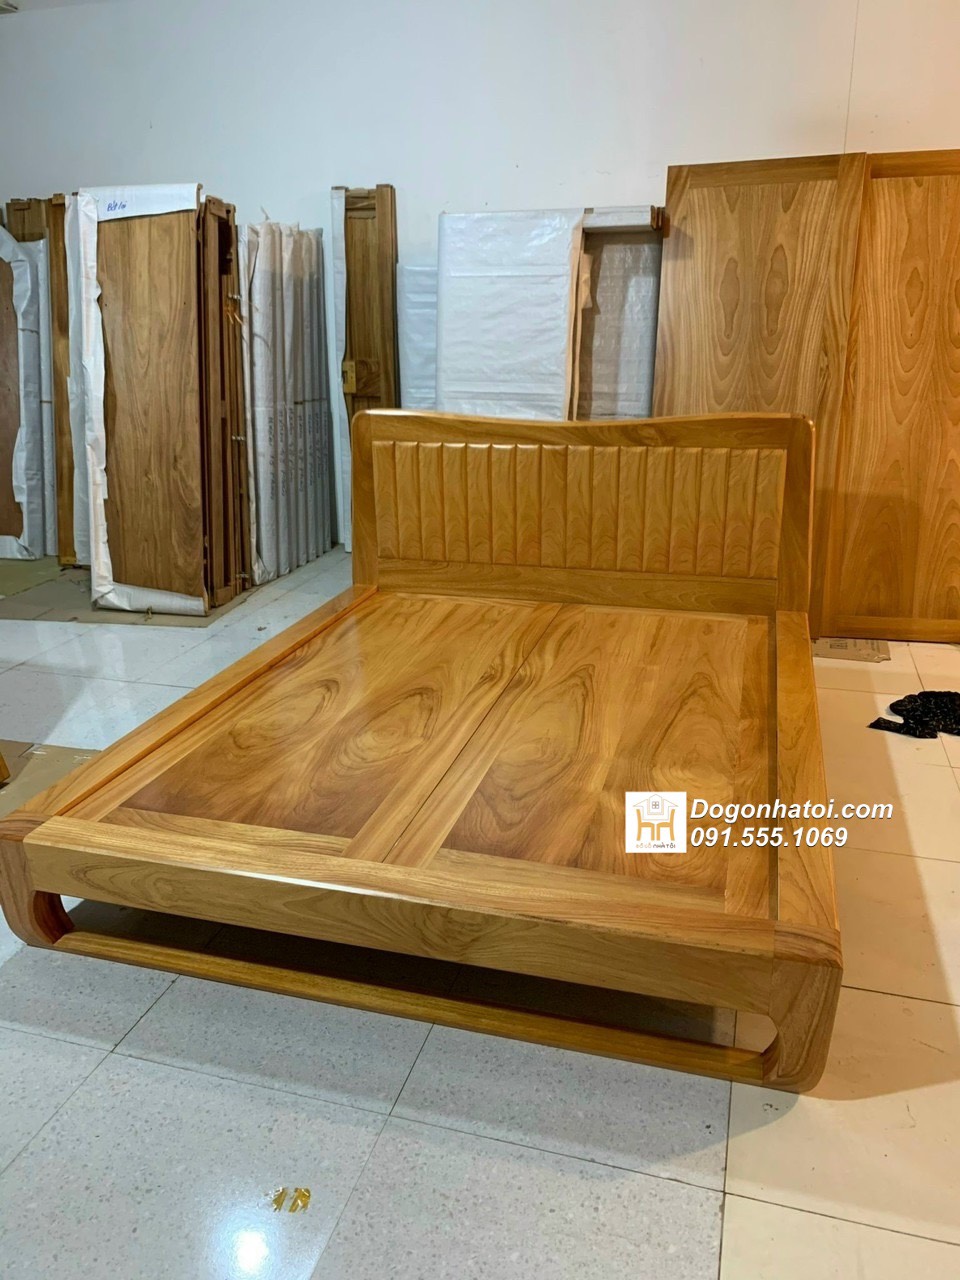 Giường ngủ thấp kiểu Nhật gỗ tự nhiên đẹp sang trọng - GN626